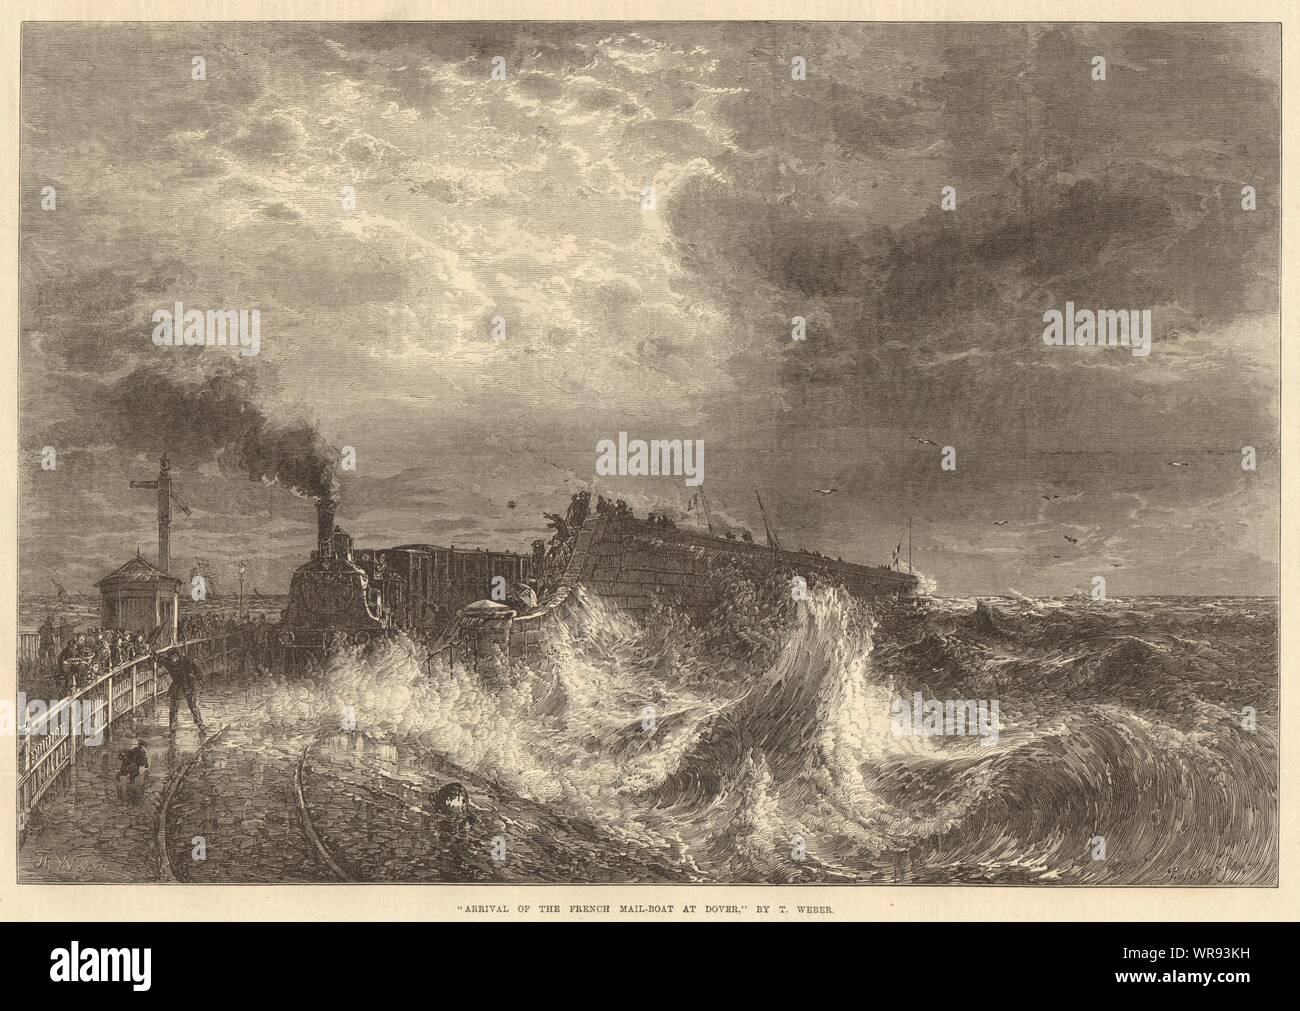 "Ankunft der französischen Post-Boot in Dover', von T.Weber. Kent. Bahn 1871 Stockfoto